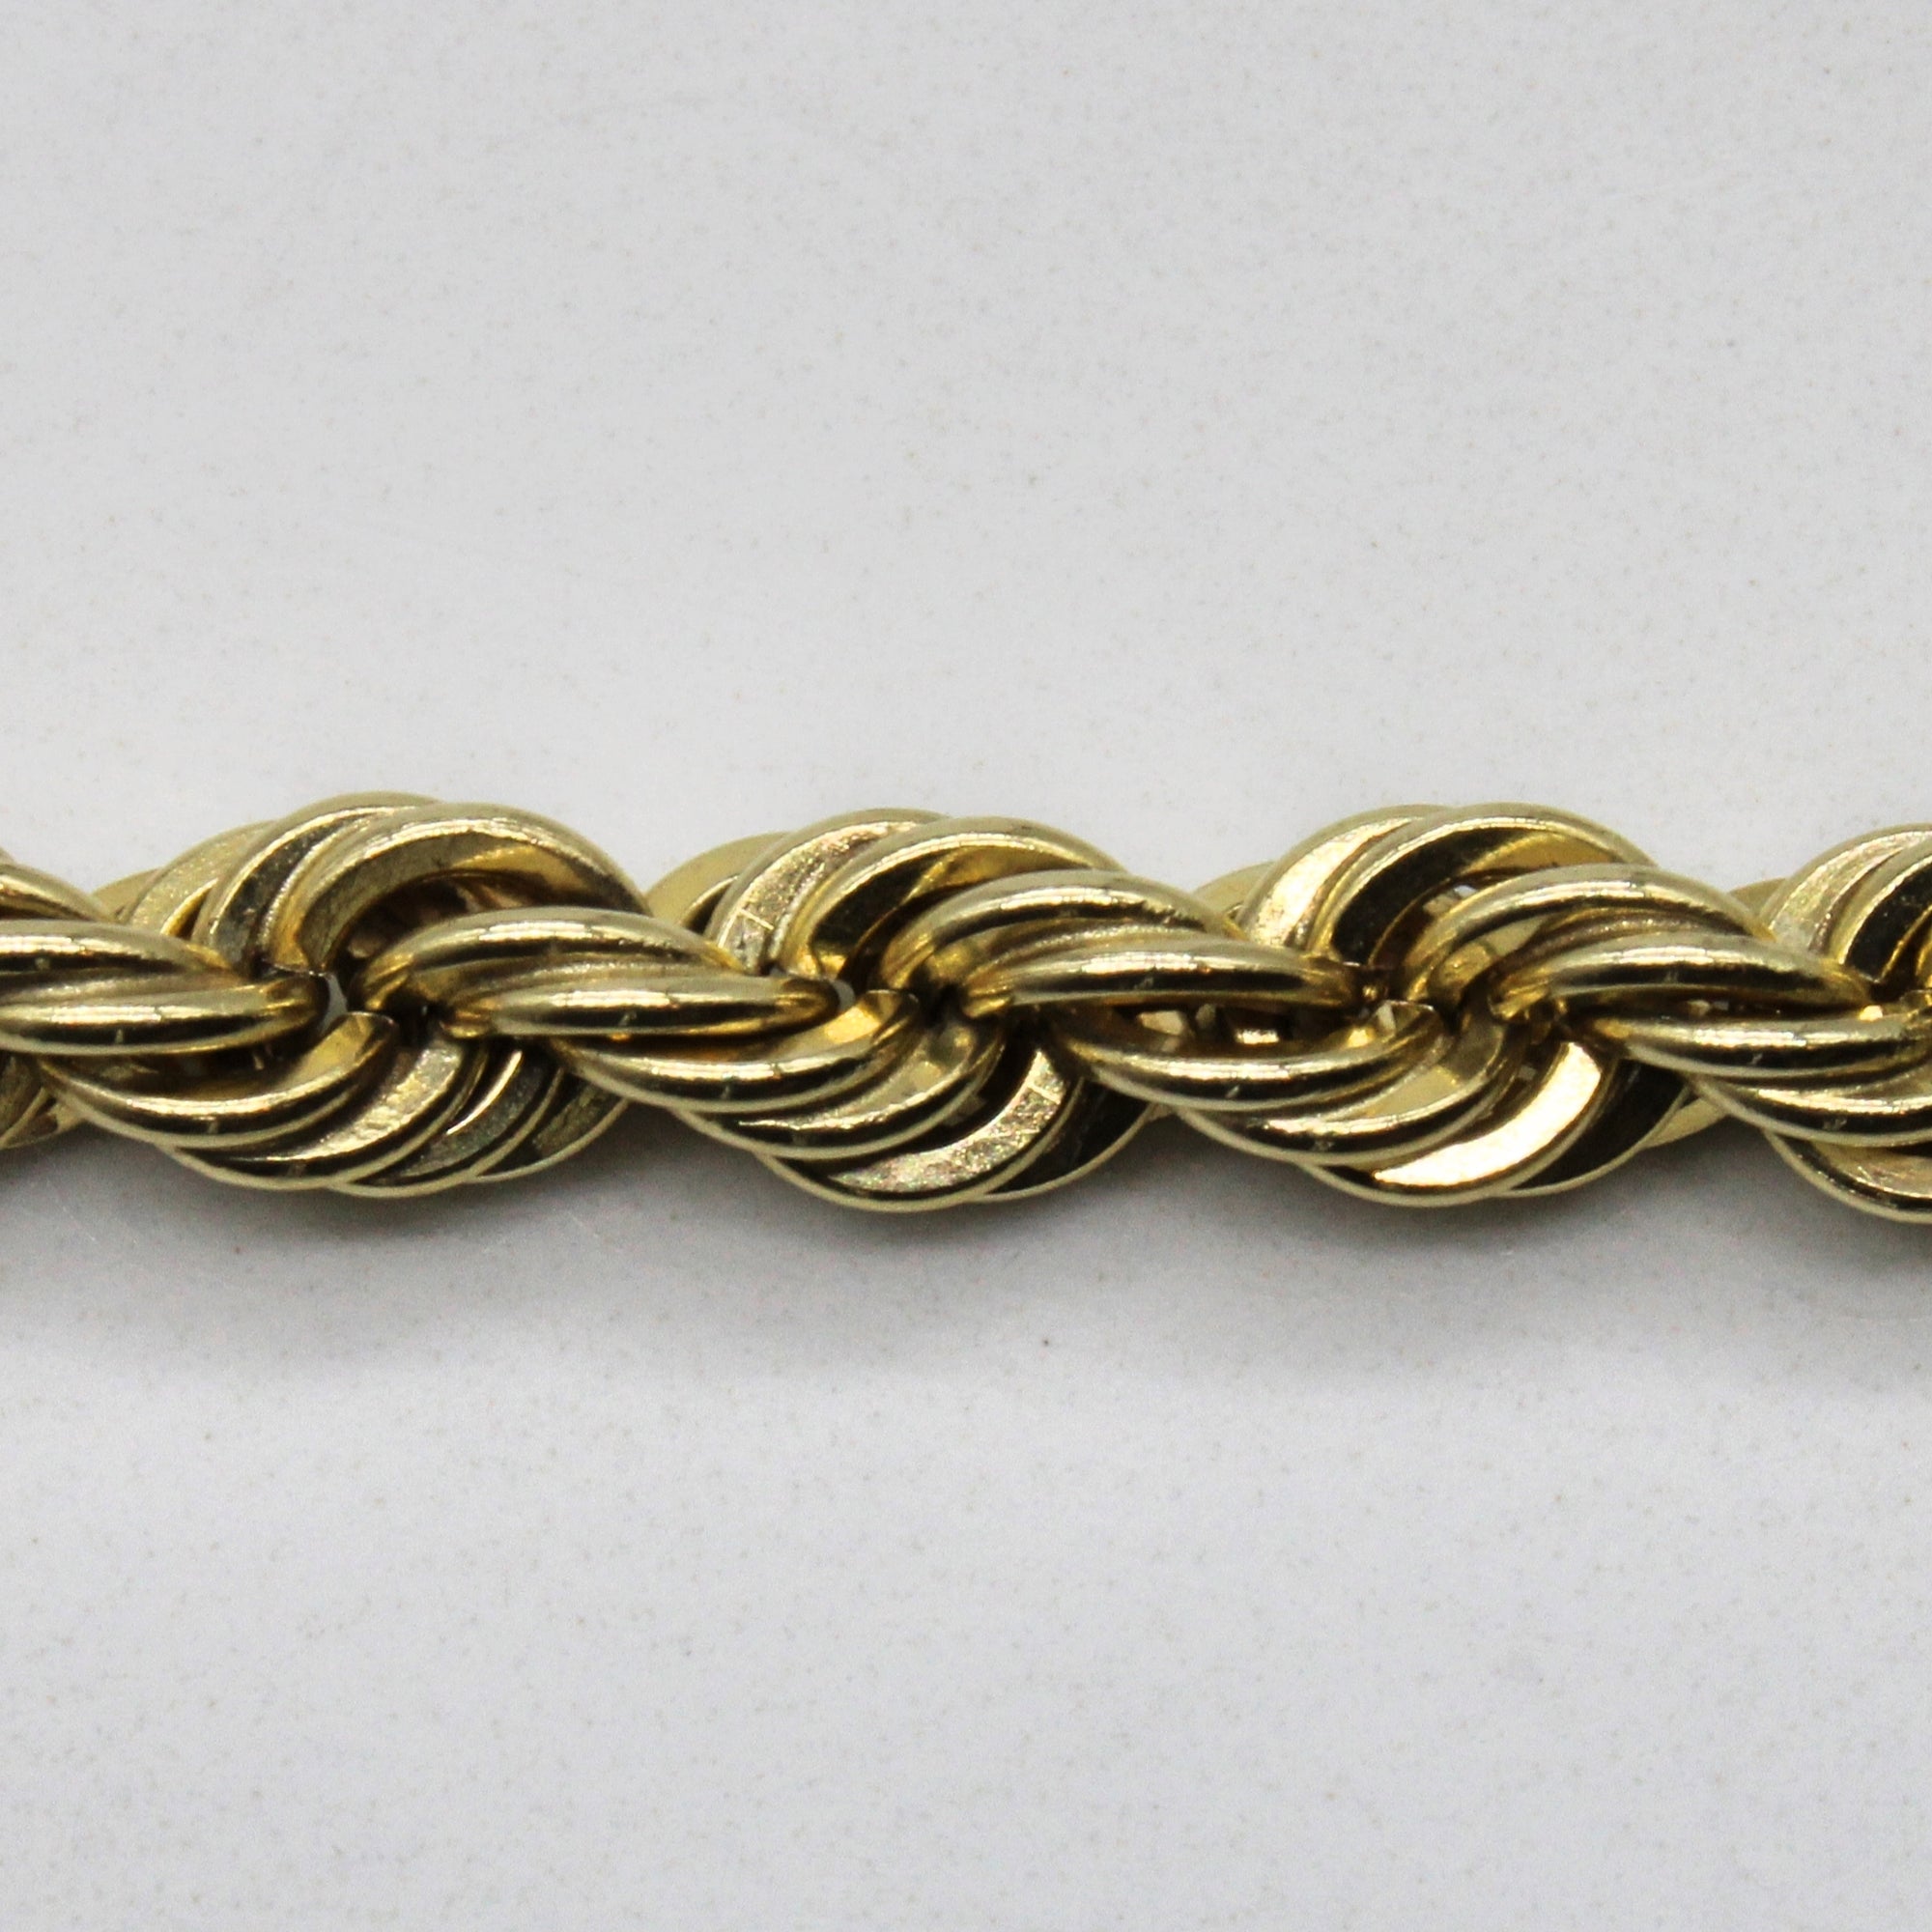 14k Yellow Gold Rope Chain | 30